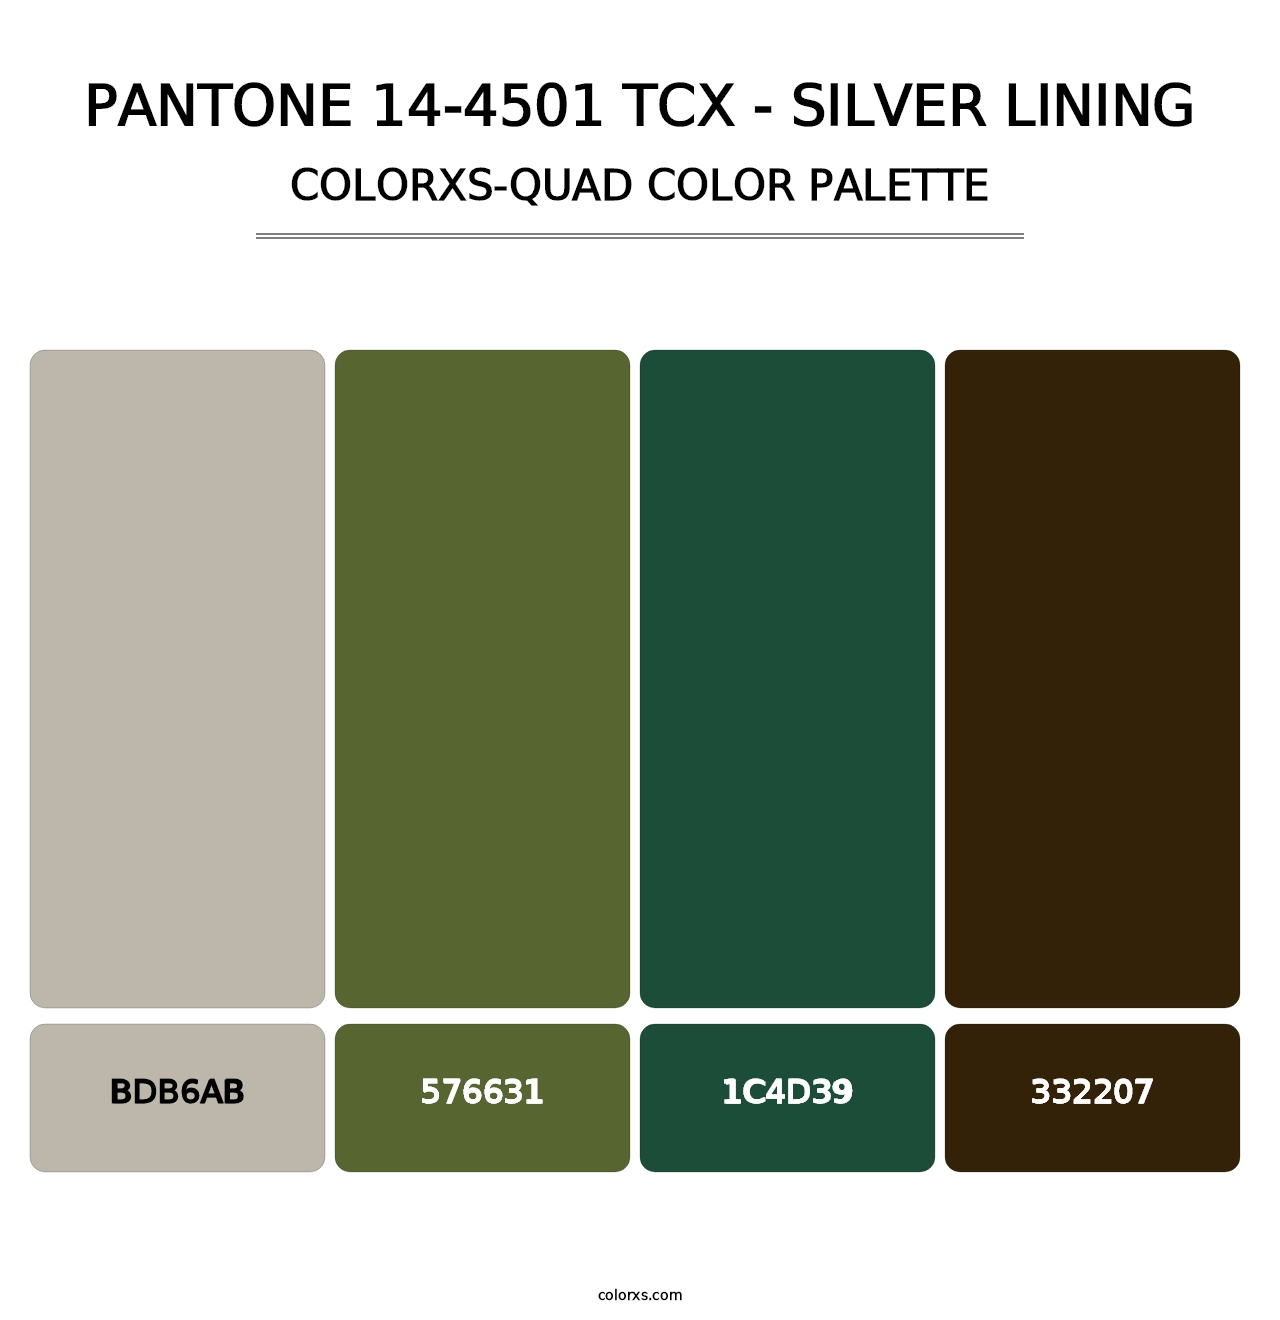 PANTONE 14-4501 TCX - Silver Lining - Colorxs Quad Palette